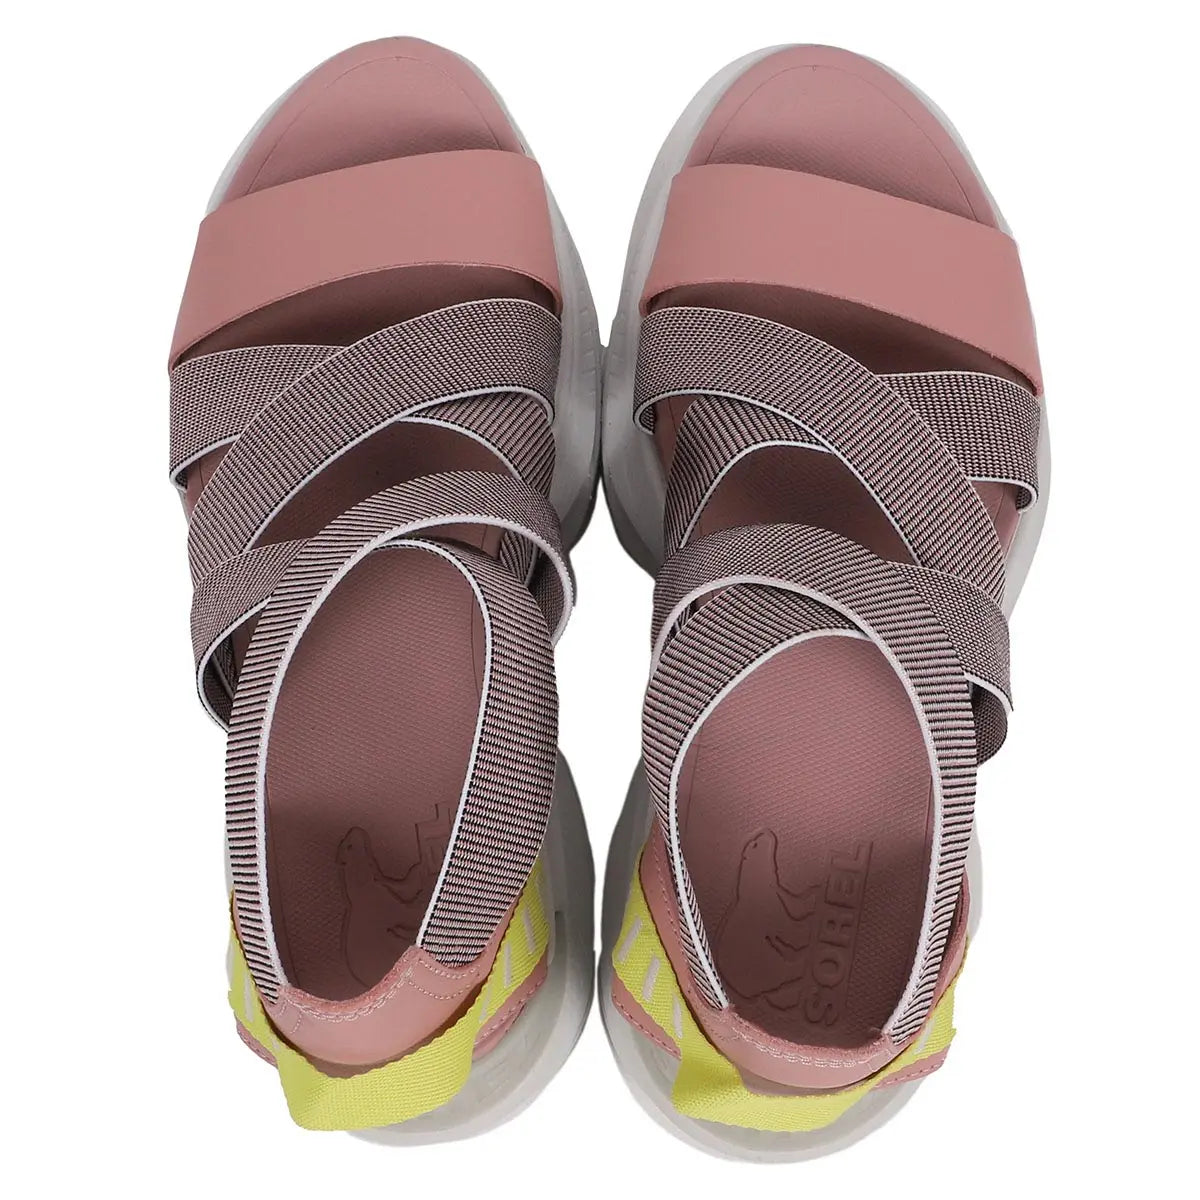 Sorel Women's Explorer Blitz Multistrap Sandal